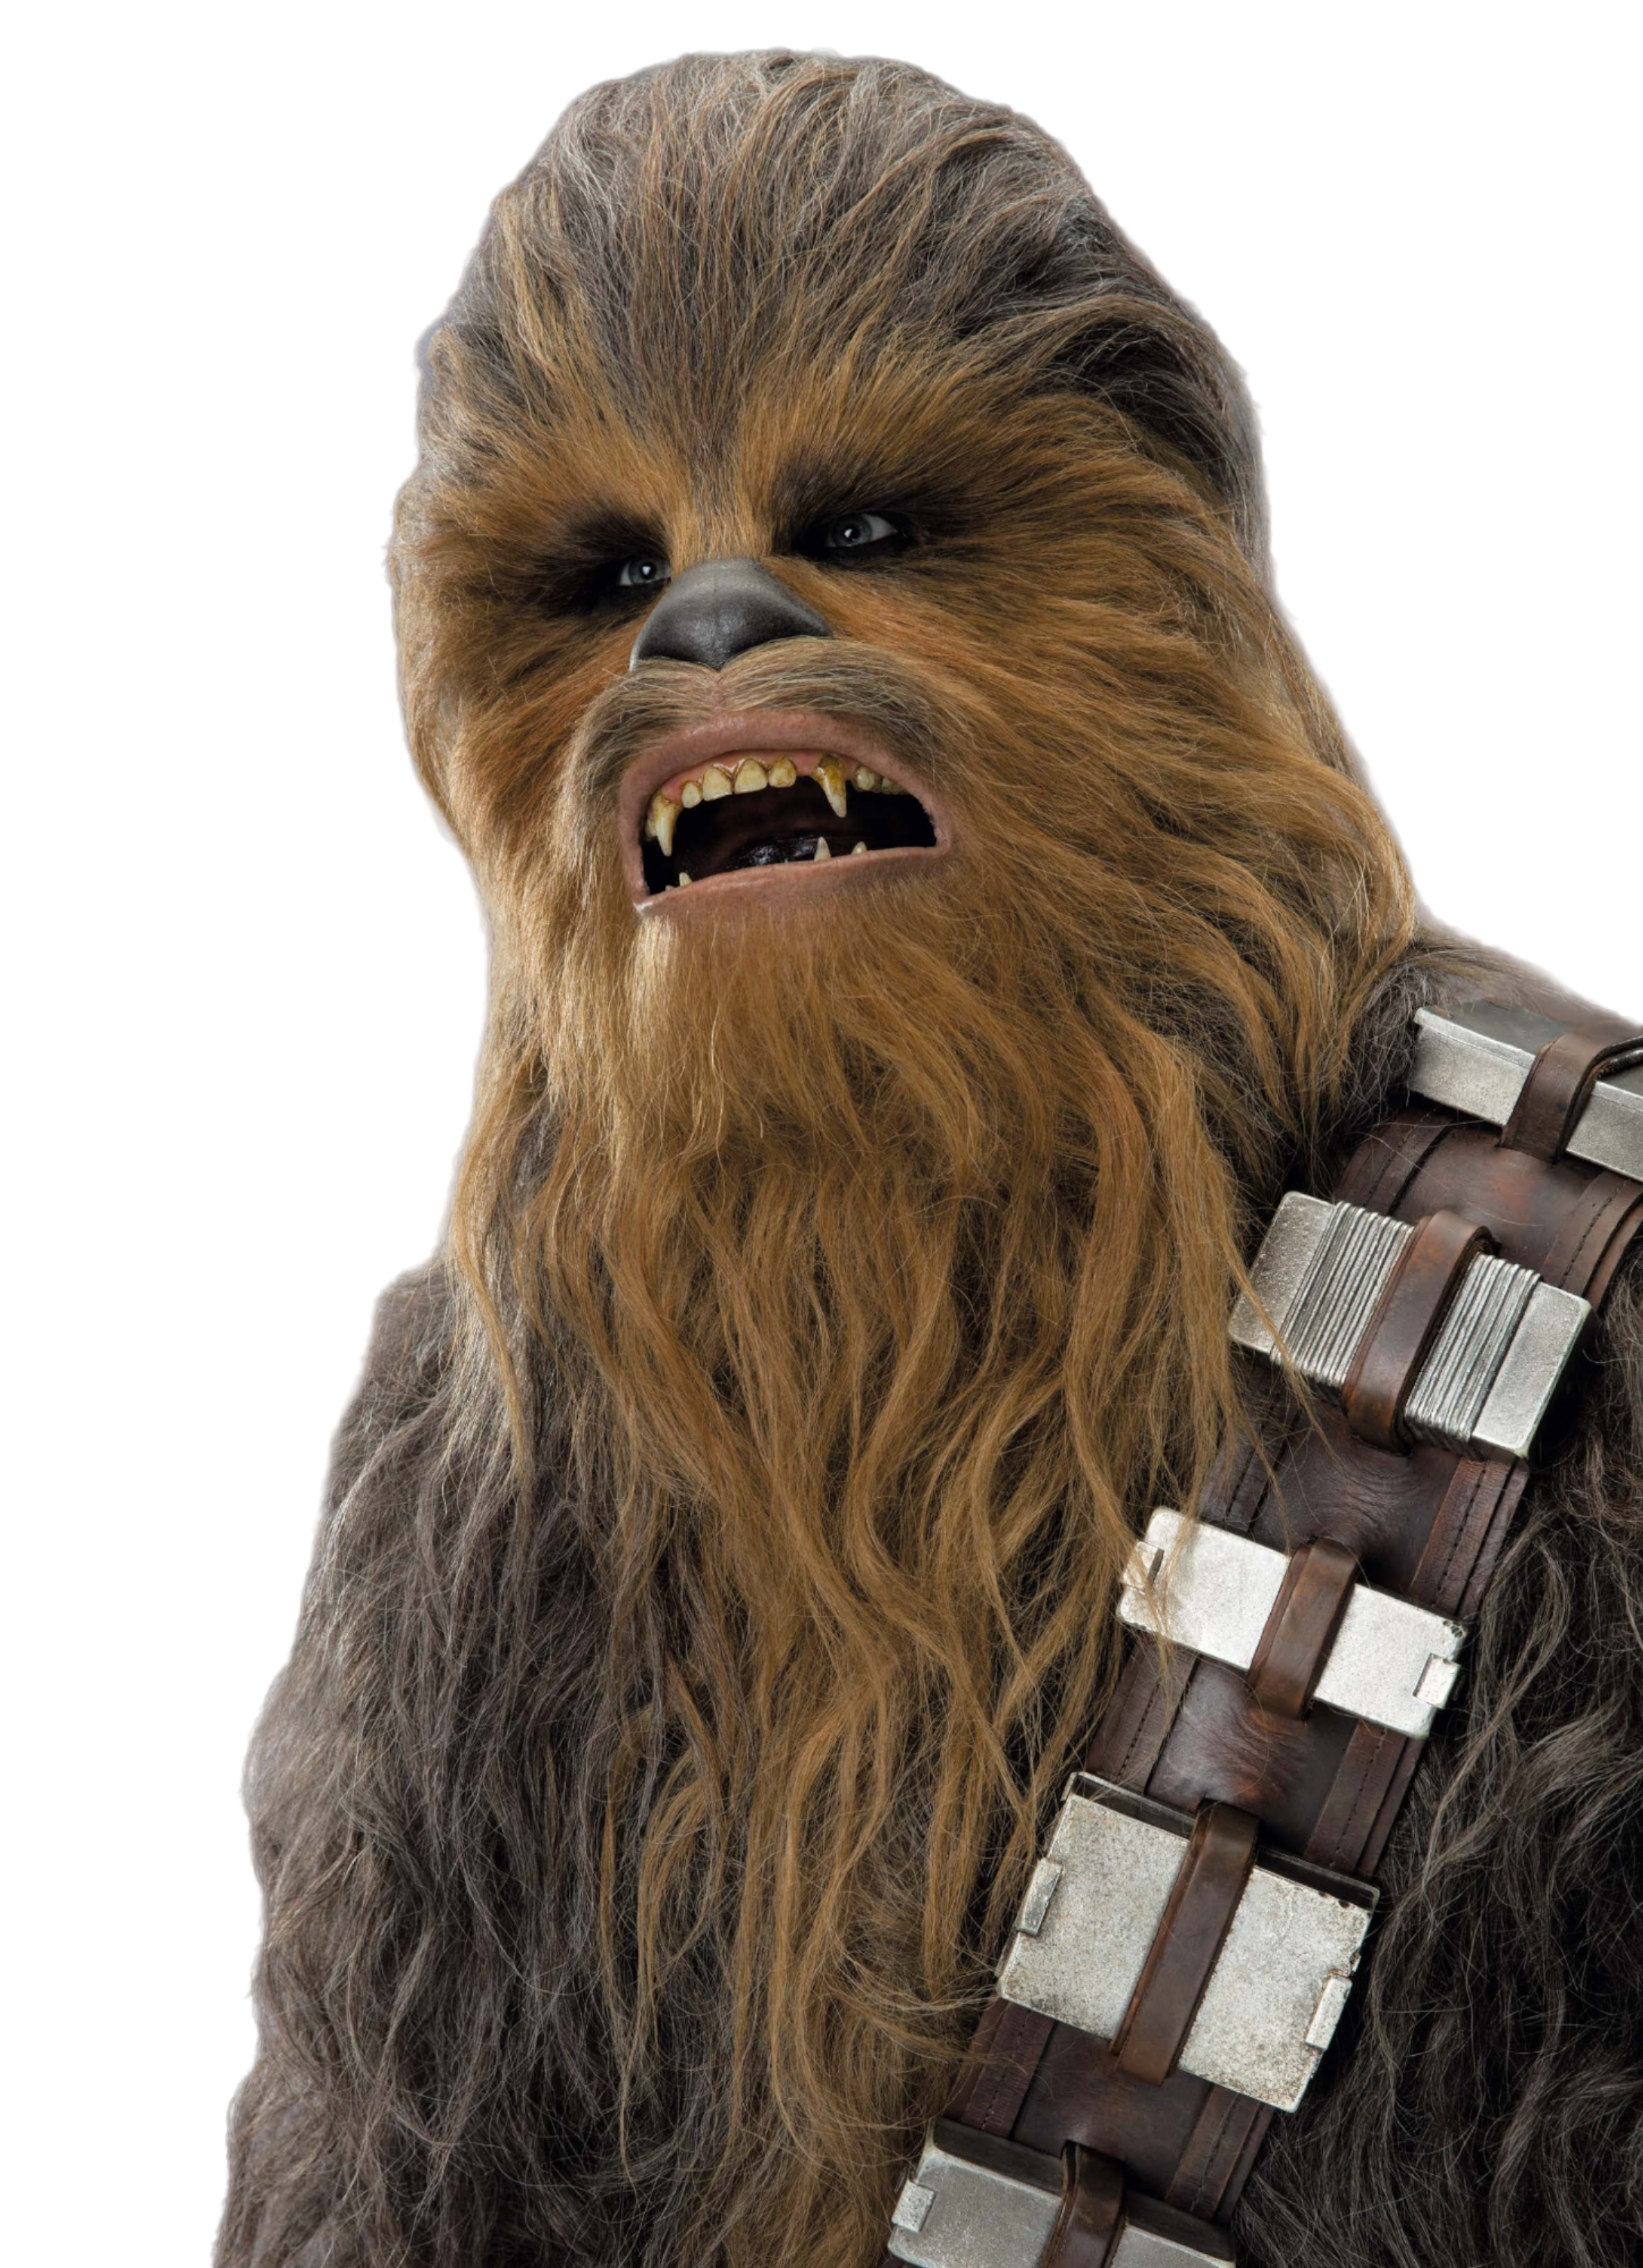 Chewbacca, Star Wars Wiki em Português